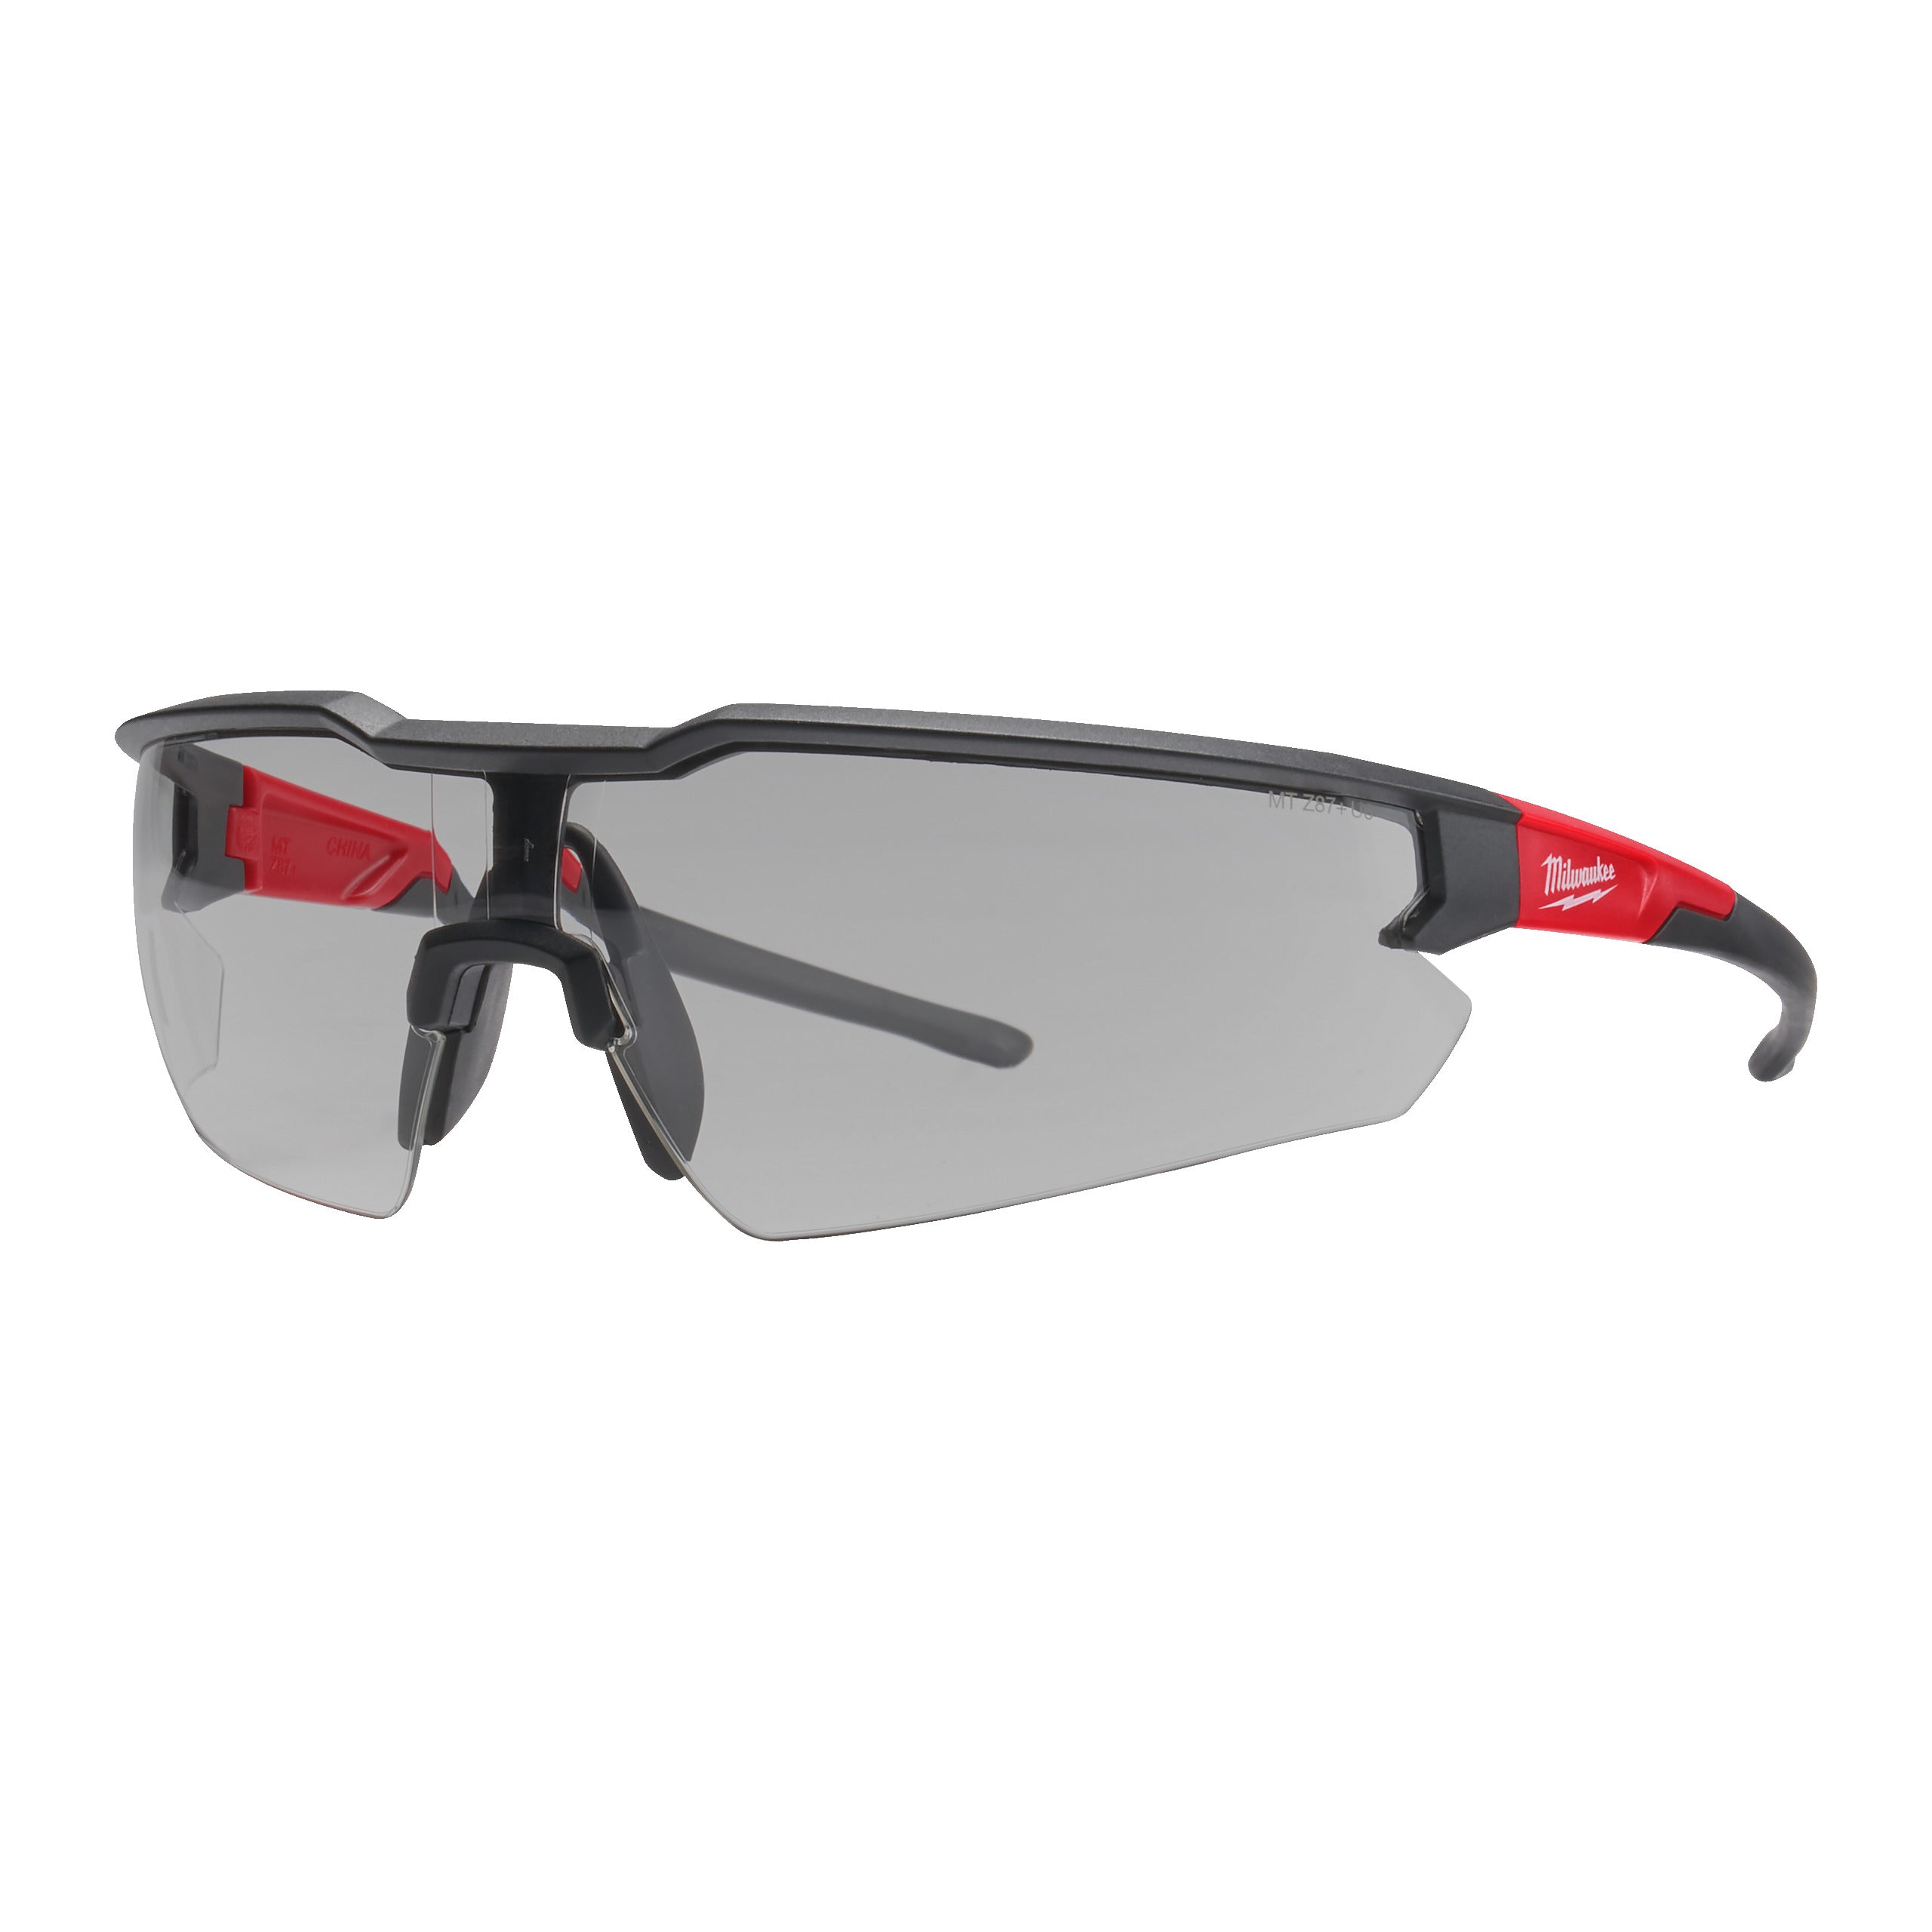 Ochelari de protecție cu lentilă gri anti-zgâriere - 144 buc, Milwaukee cod 4932479026